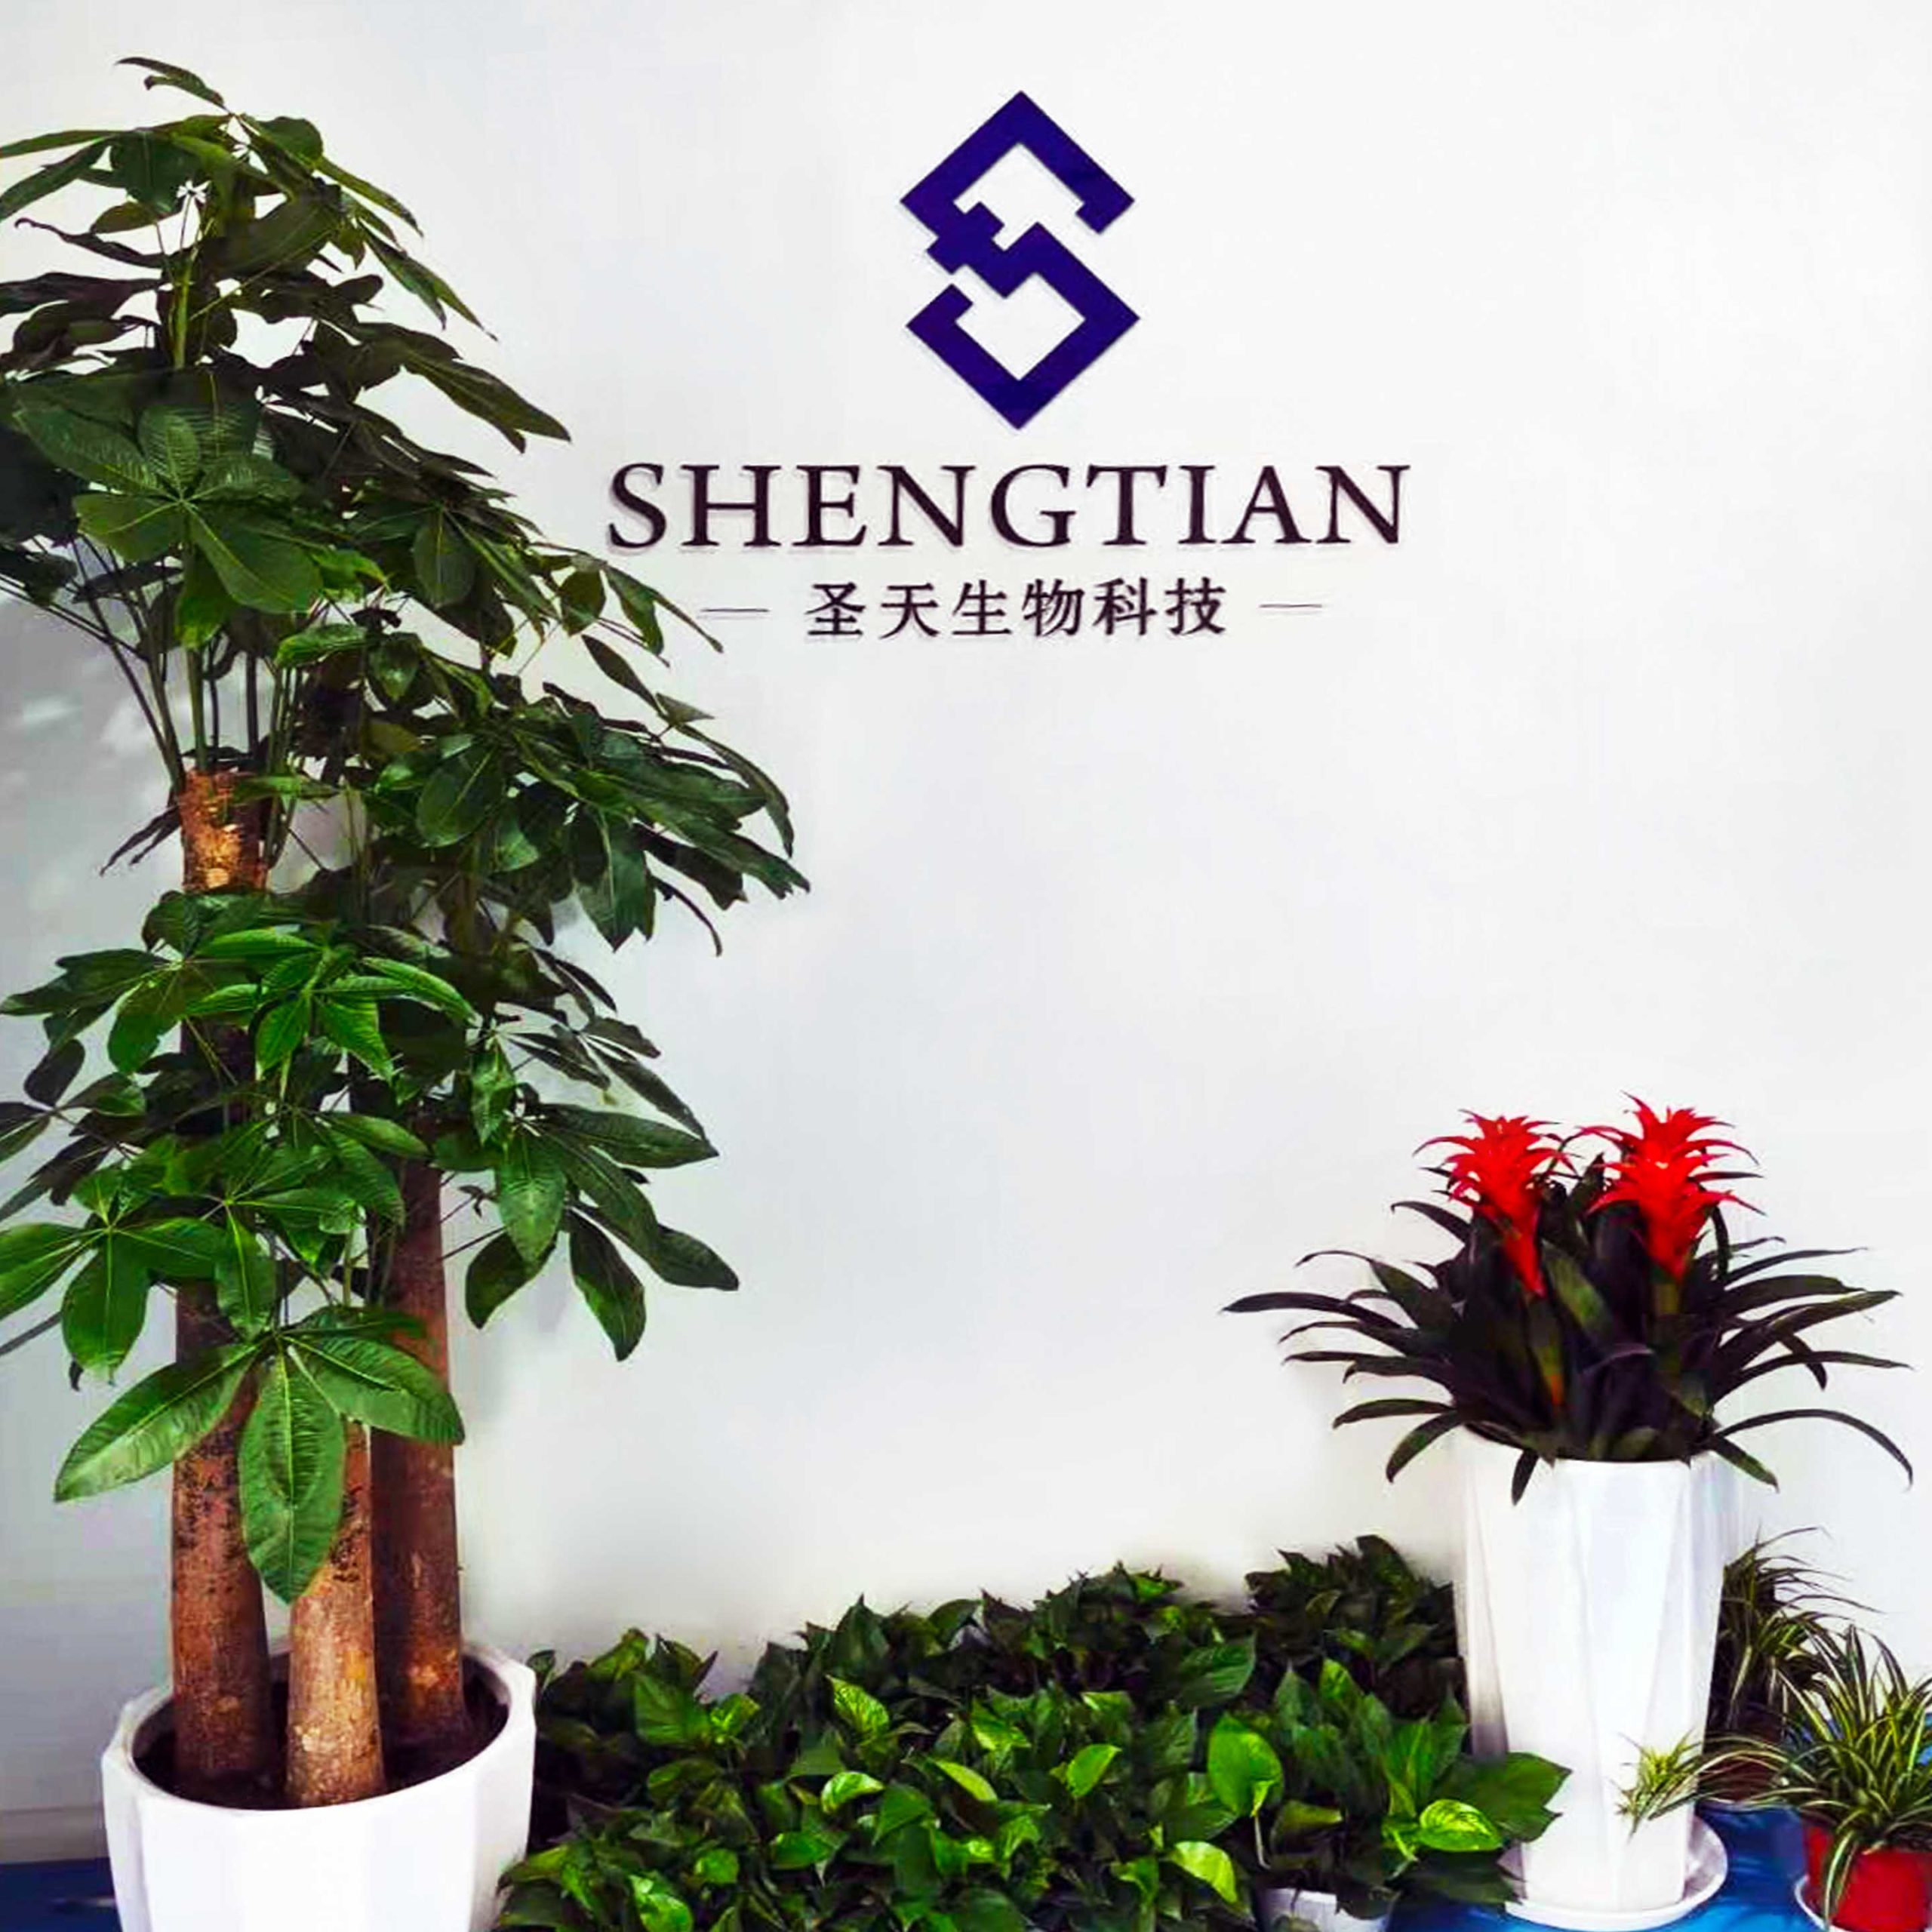 Suzhou Shengtian Biological Technology Co., Ltd.